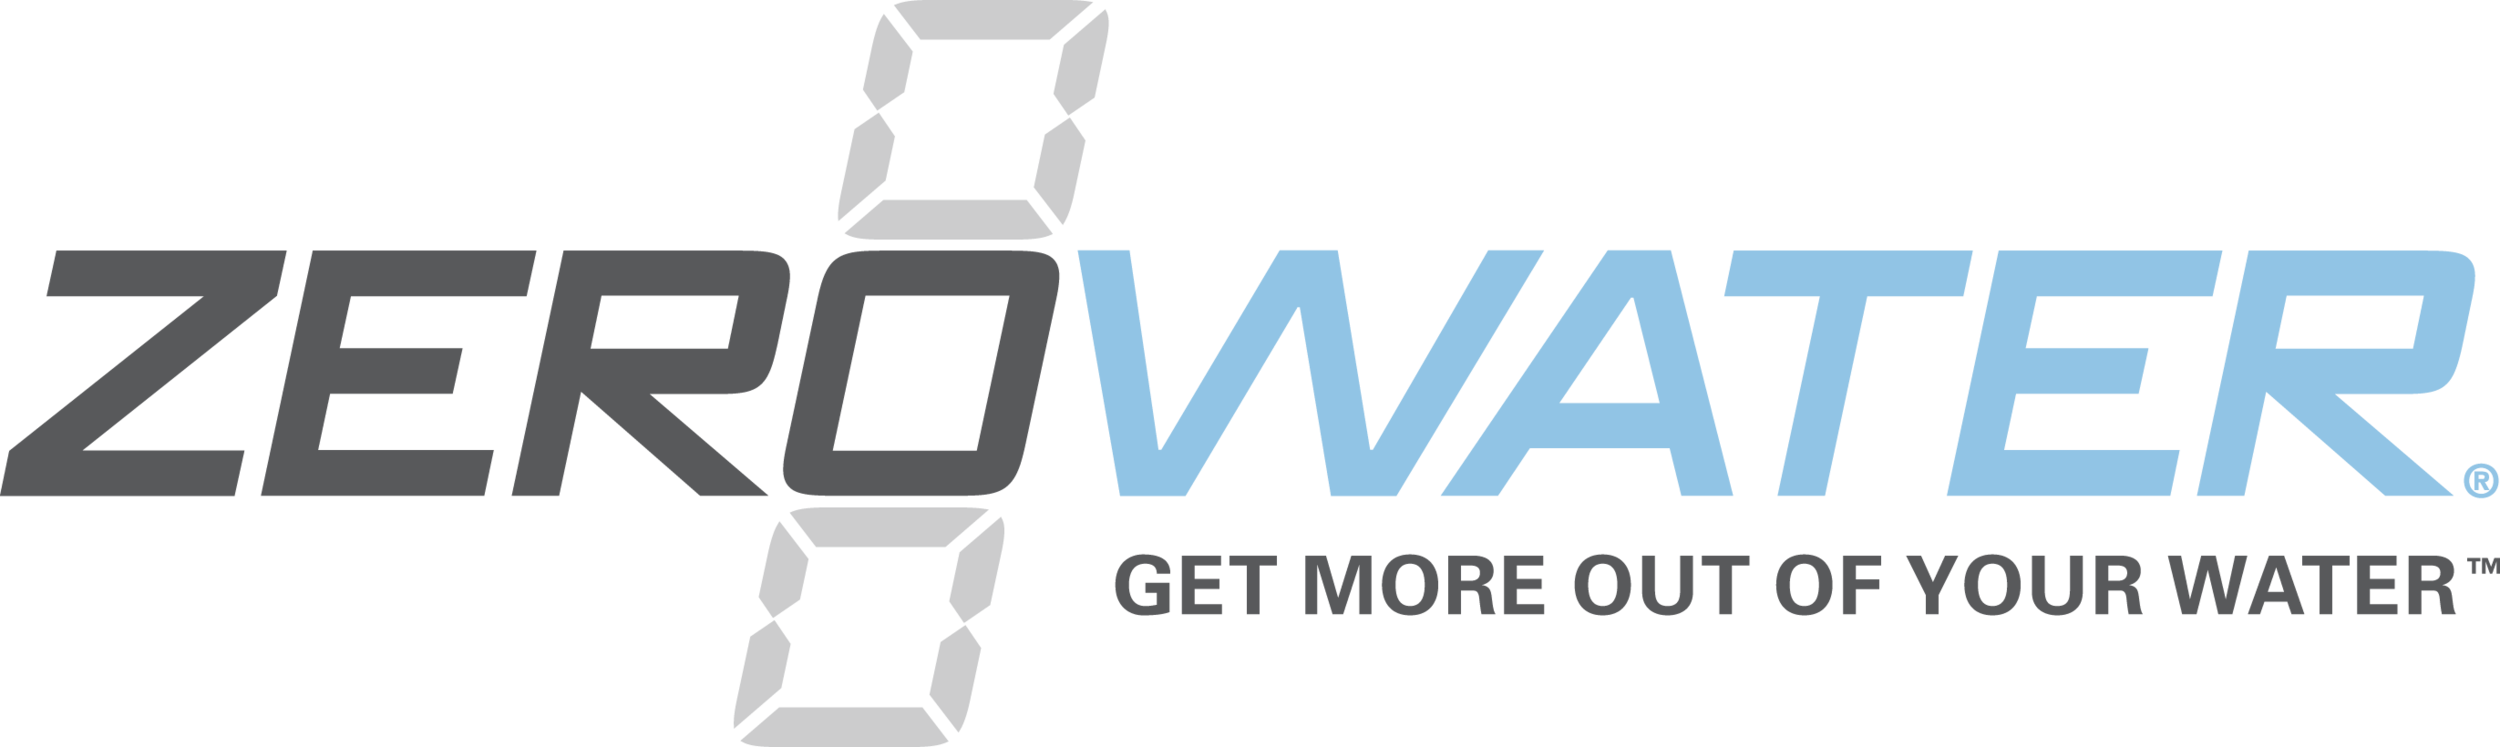 ZeroWater-logo_tagline-OnWhite_hi-res-Copy.png